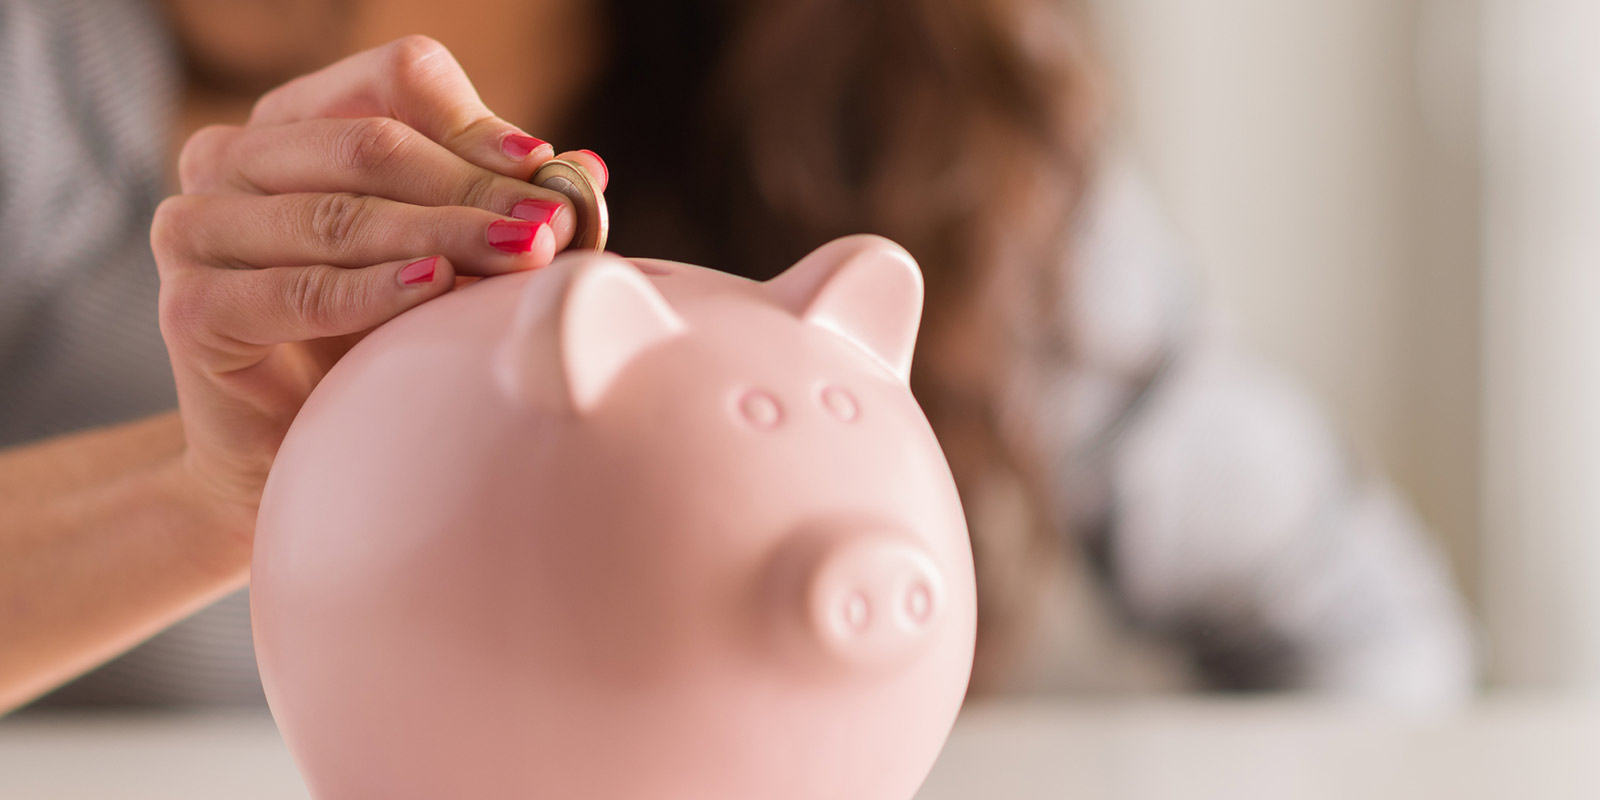 A woman places a coin into a piggy bank.